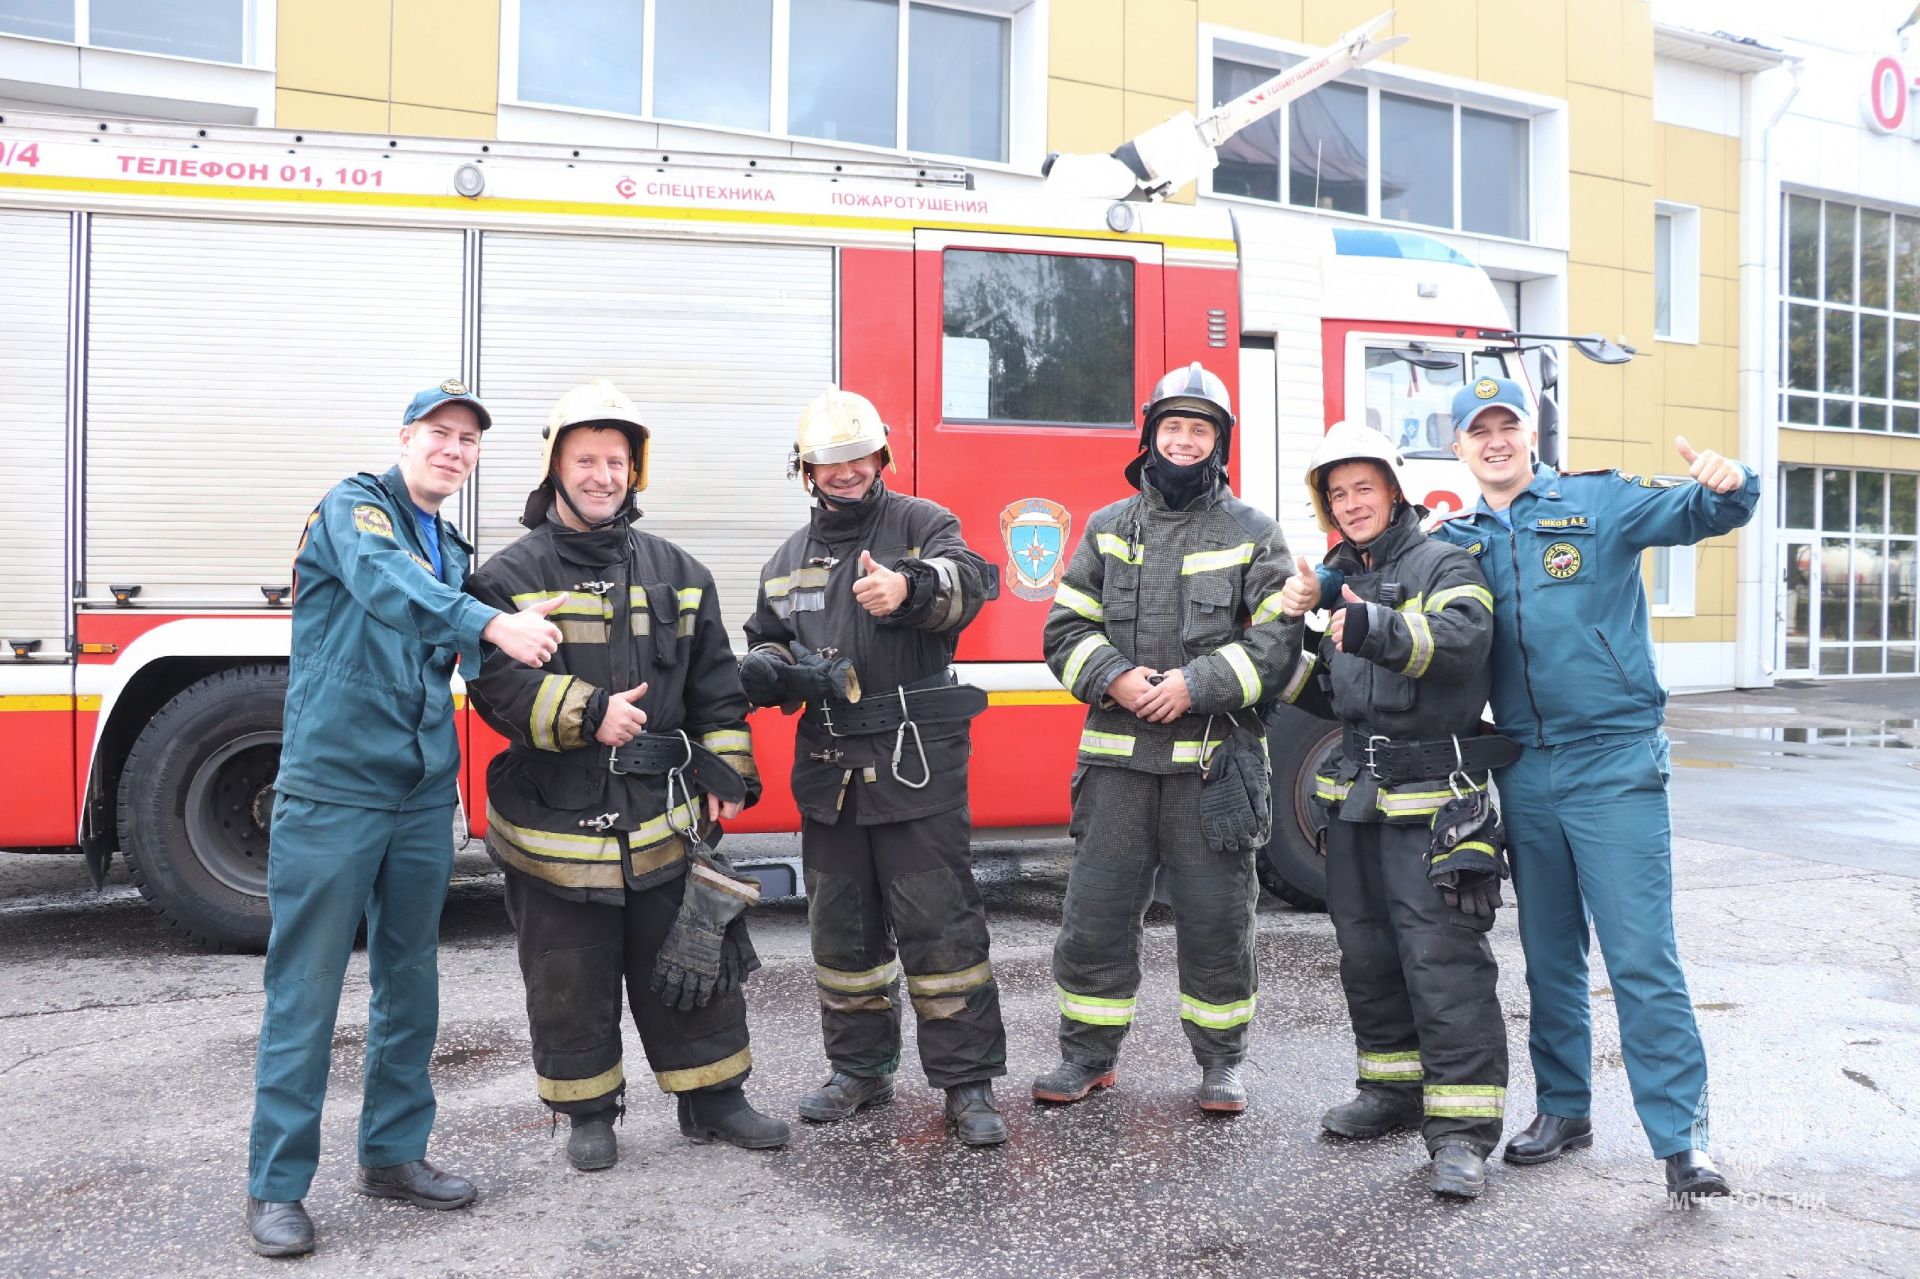 5 пожарно-спасательный отряд Главного управления МЧС России по Владимирской области приглашает на работу